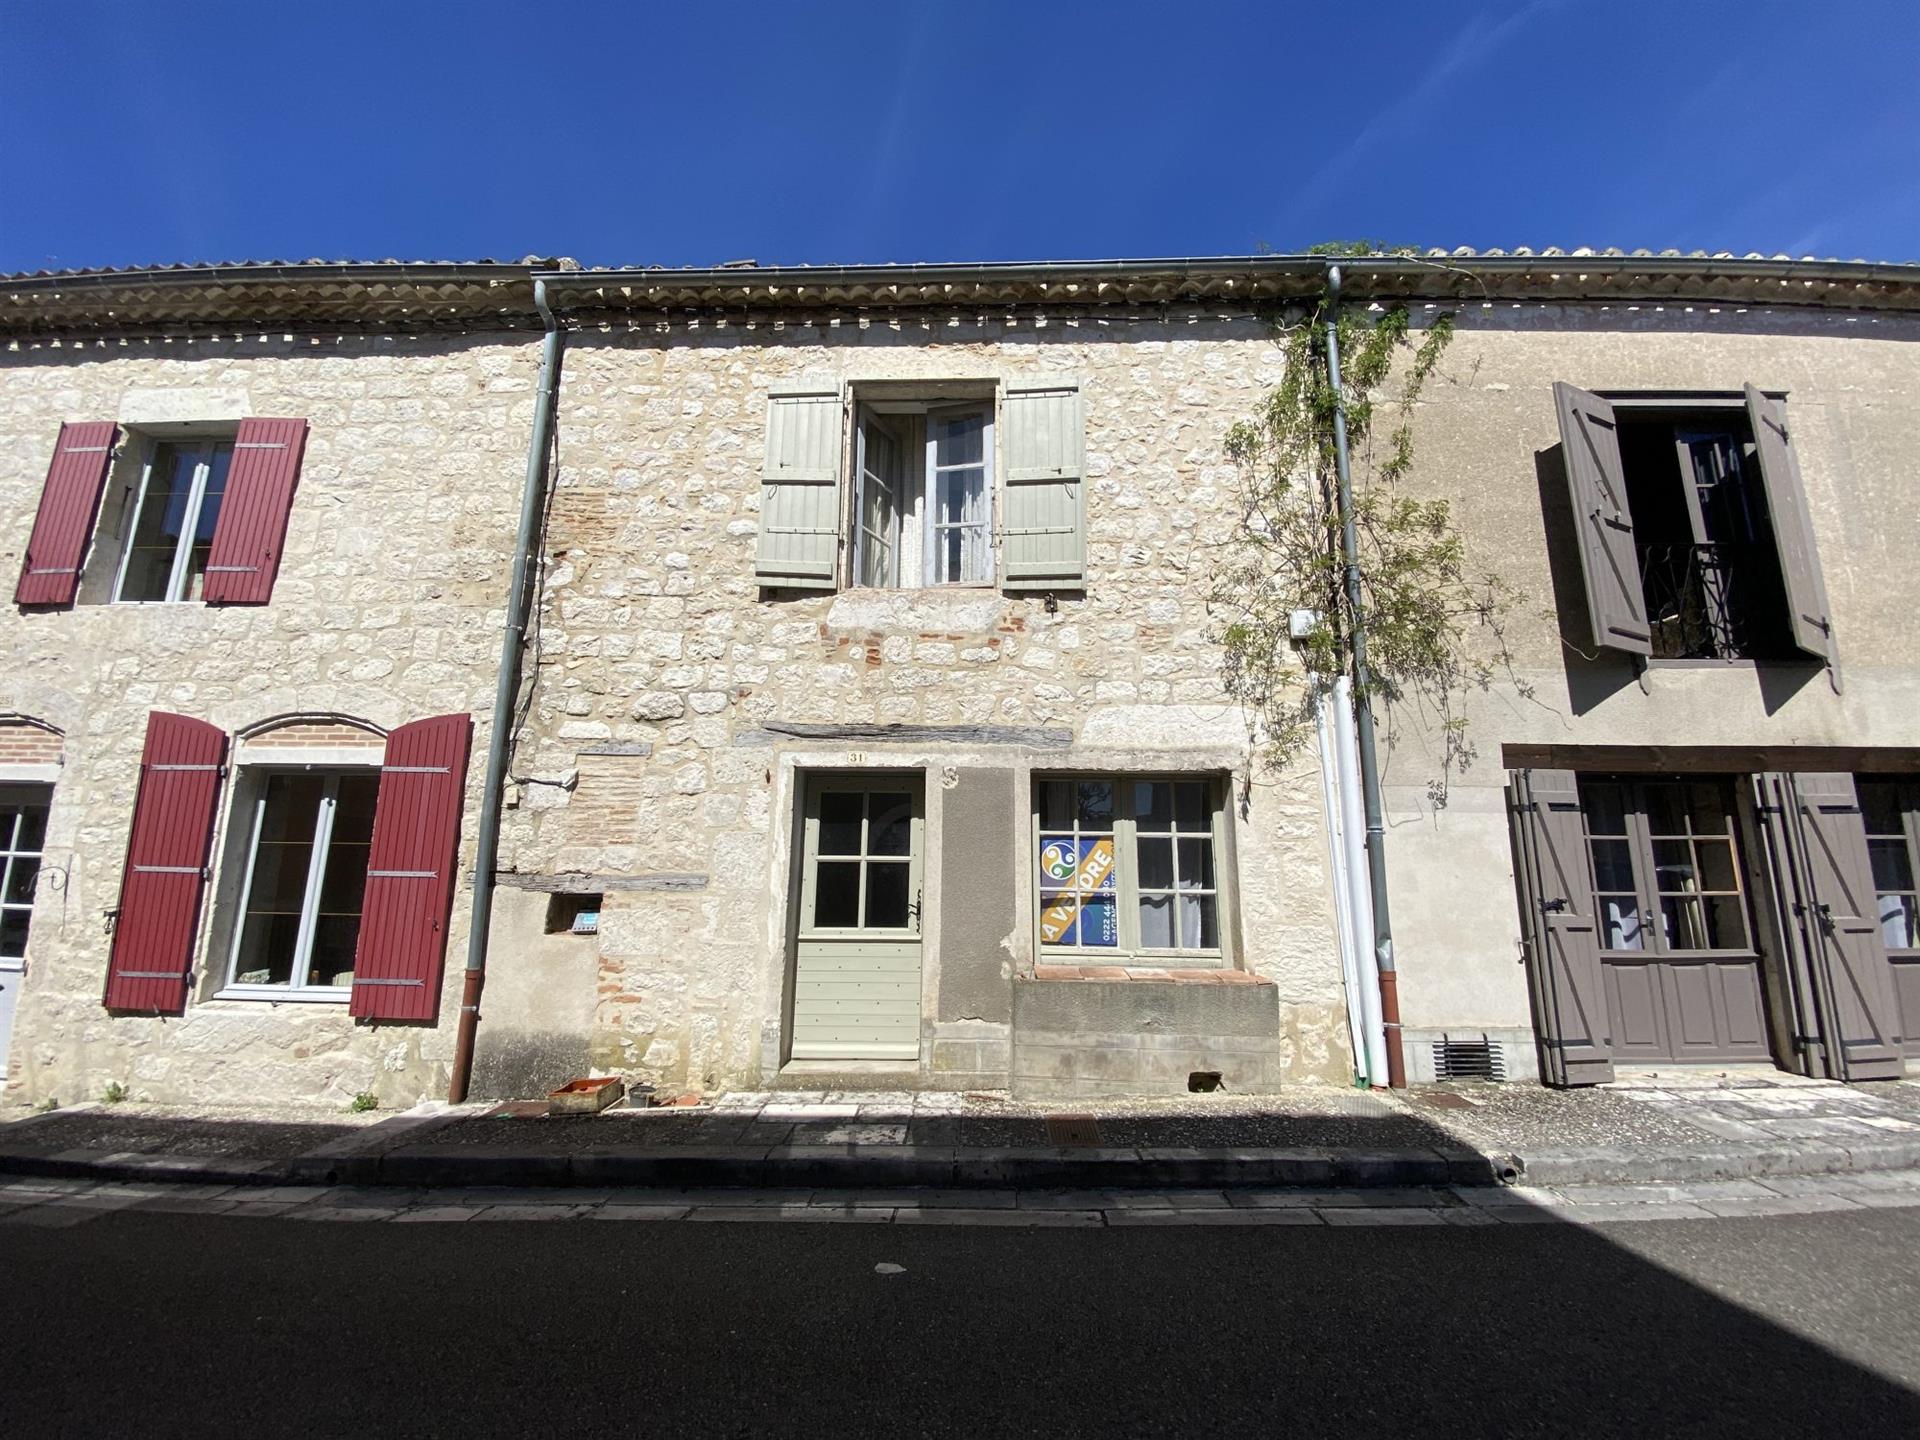  Lot Et Garonne Maison de village historique avec 3 chambres, à deux pas de la place principale